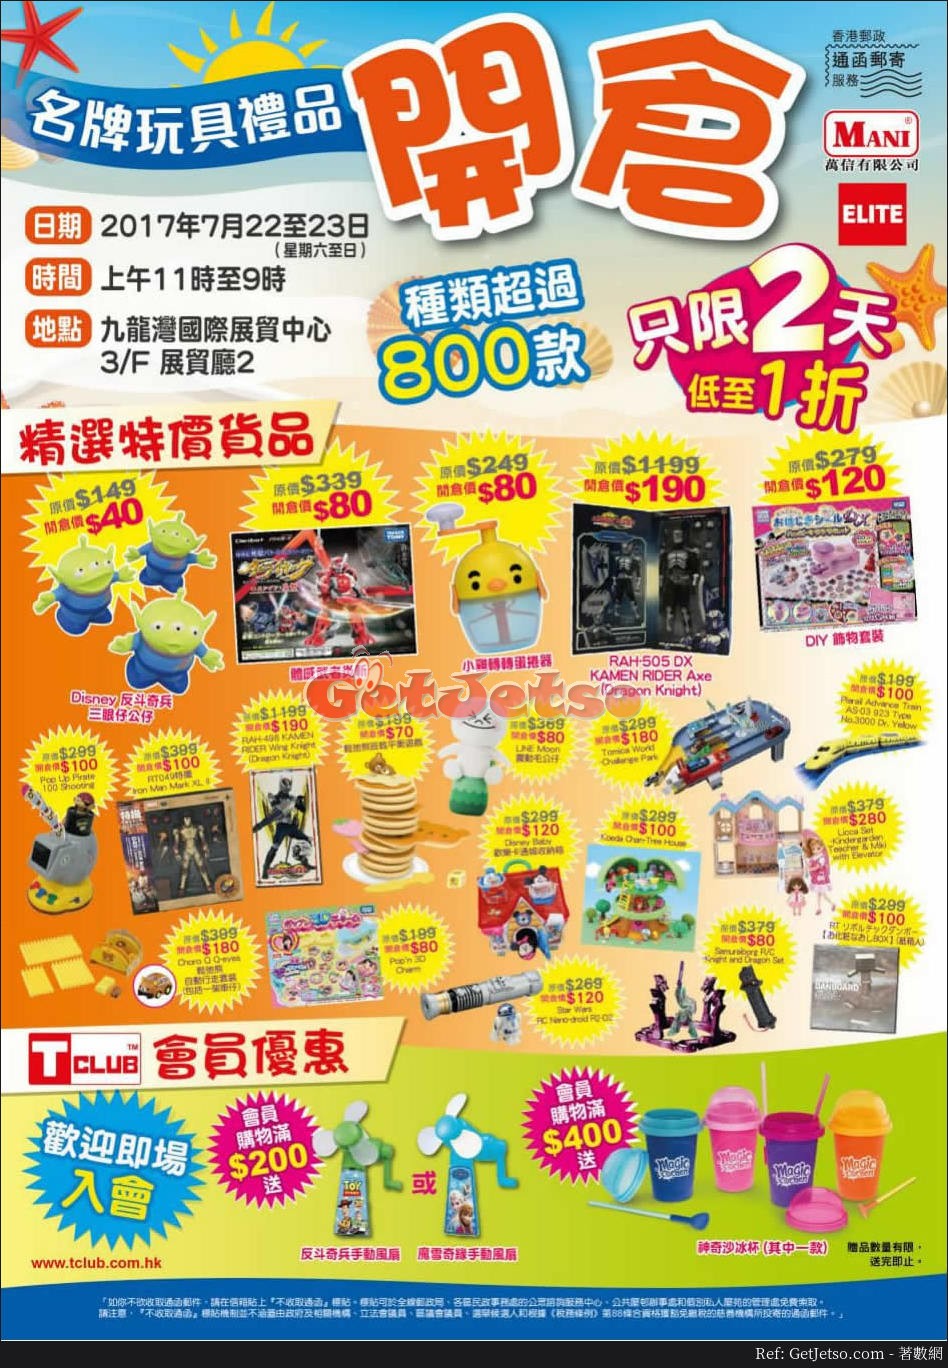 大型名牌玩具禮品低至1折開倉優惠@九龍灣國際展貿中心(17年7月22-23日)圖片1